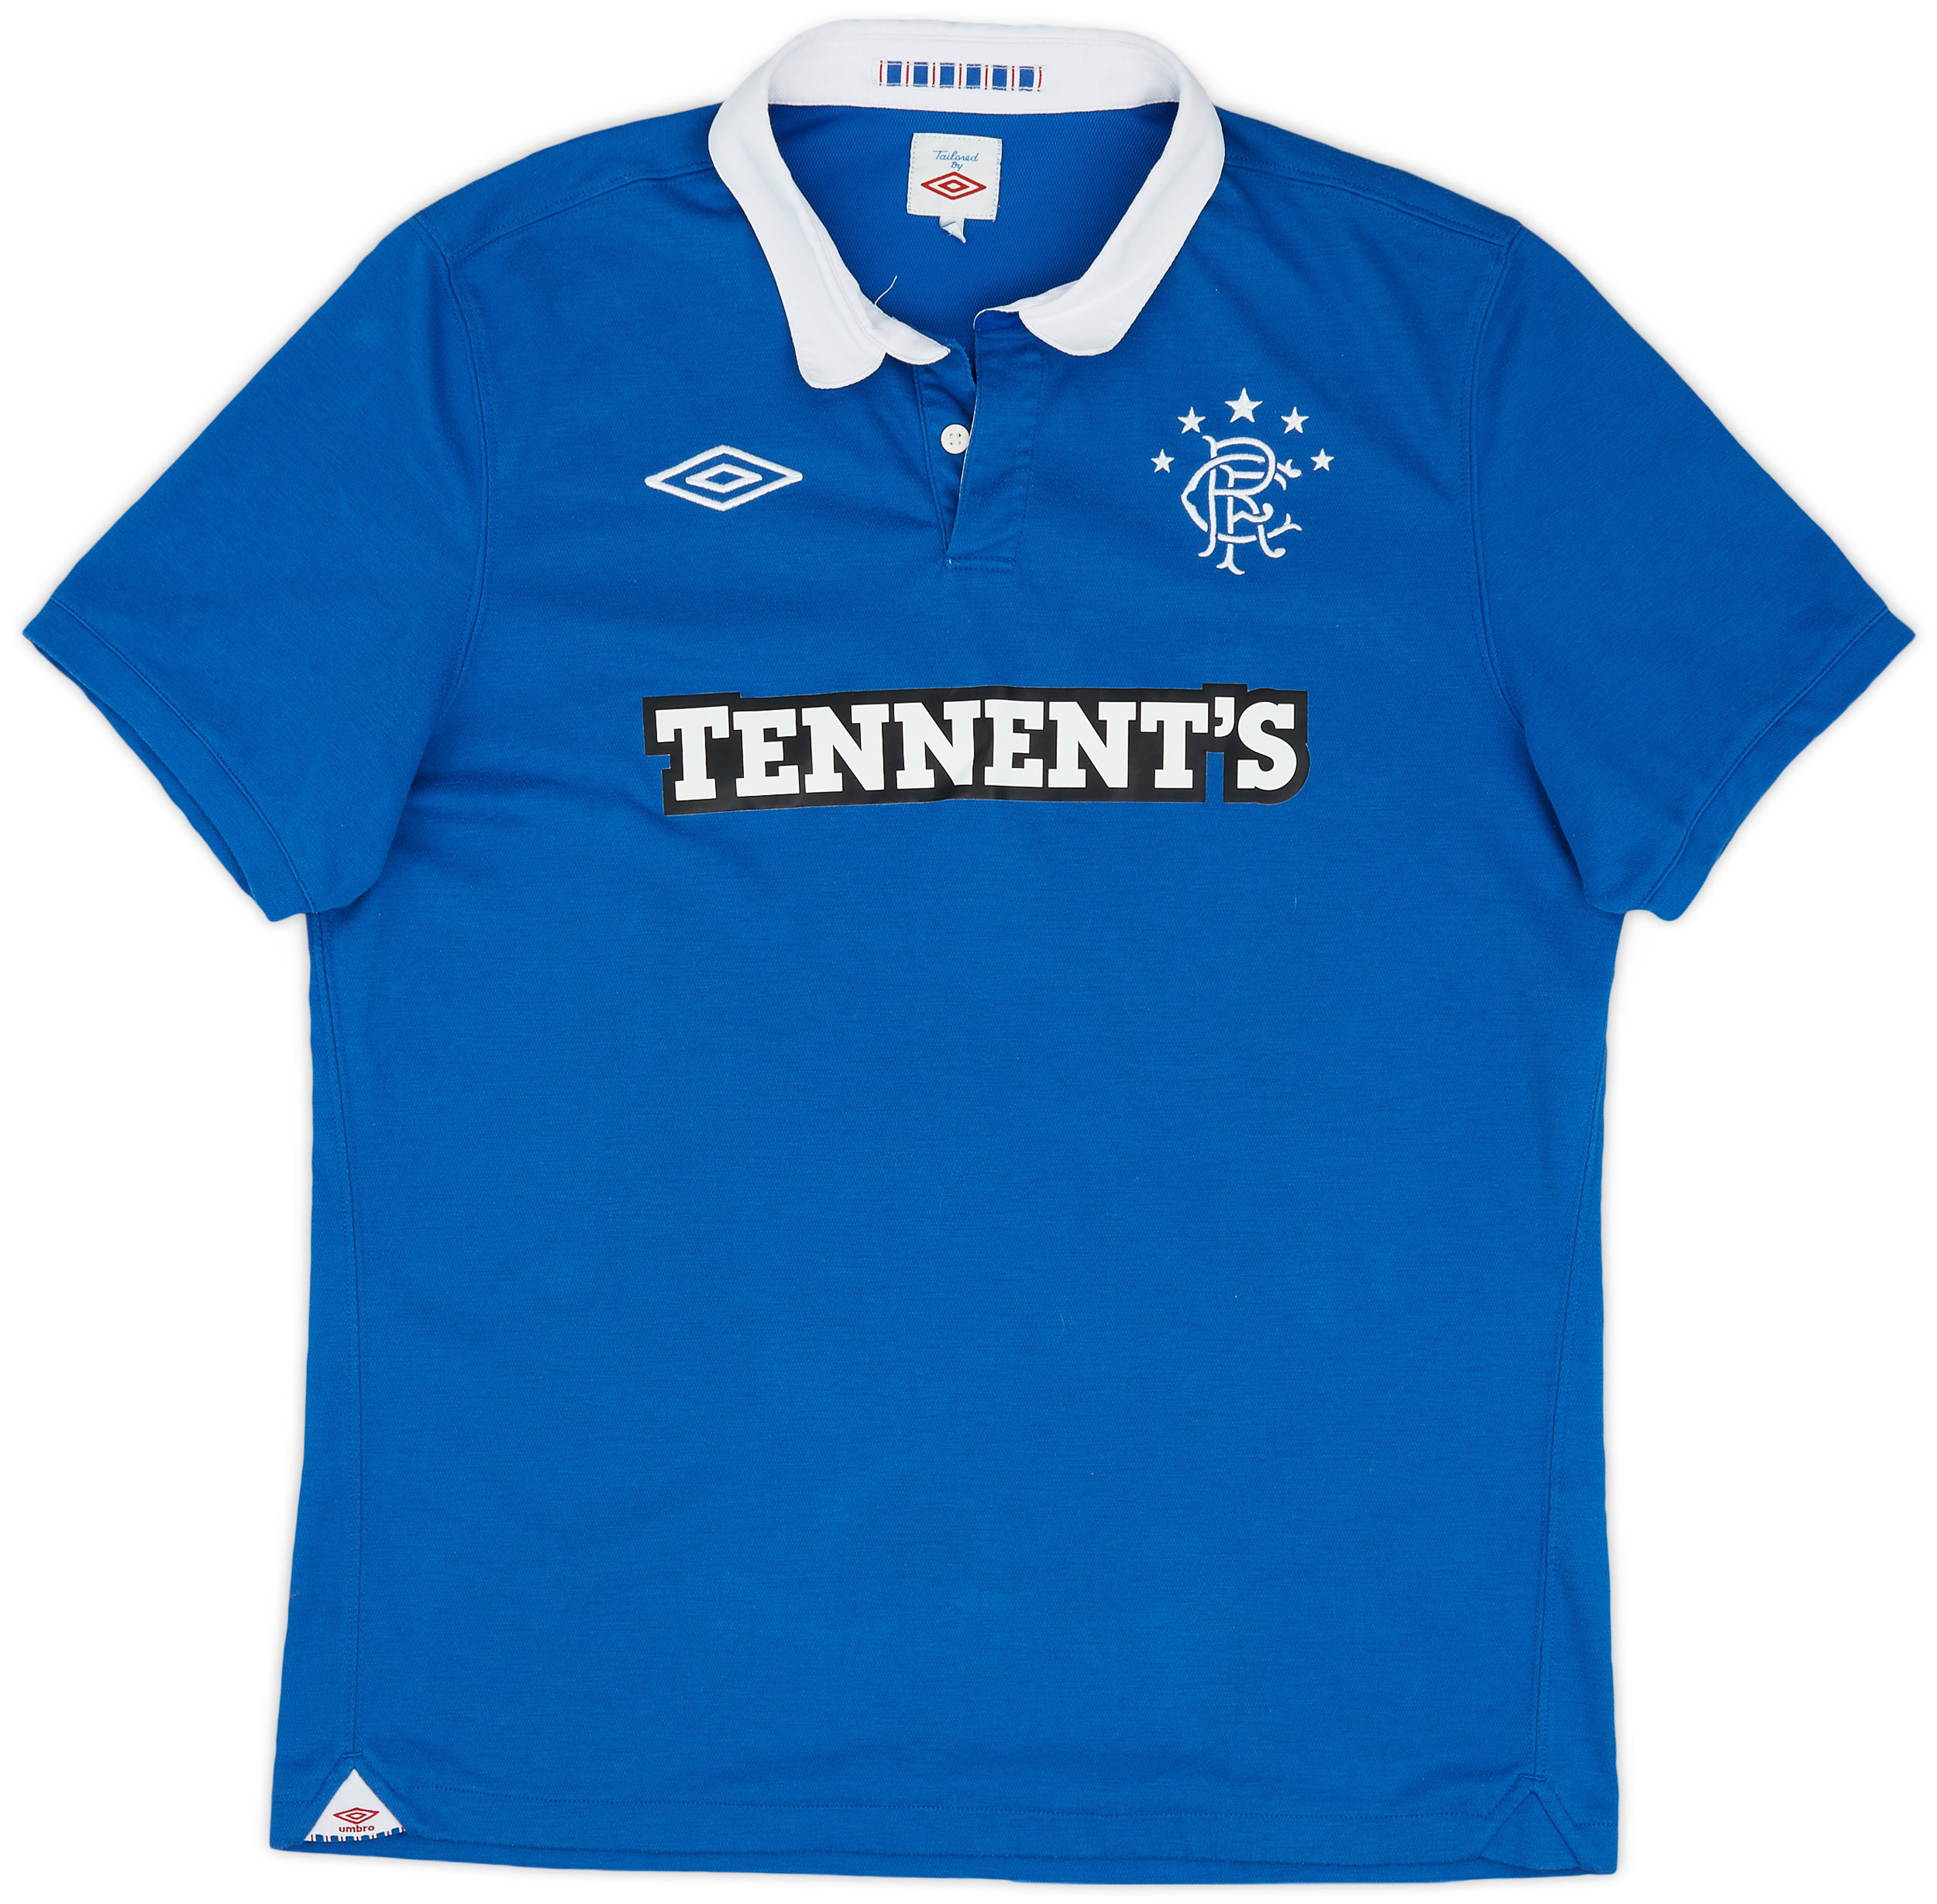 2010-11 Rangers Home Shirt - 9/10 - ()